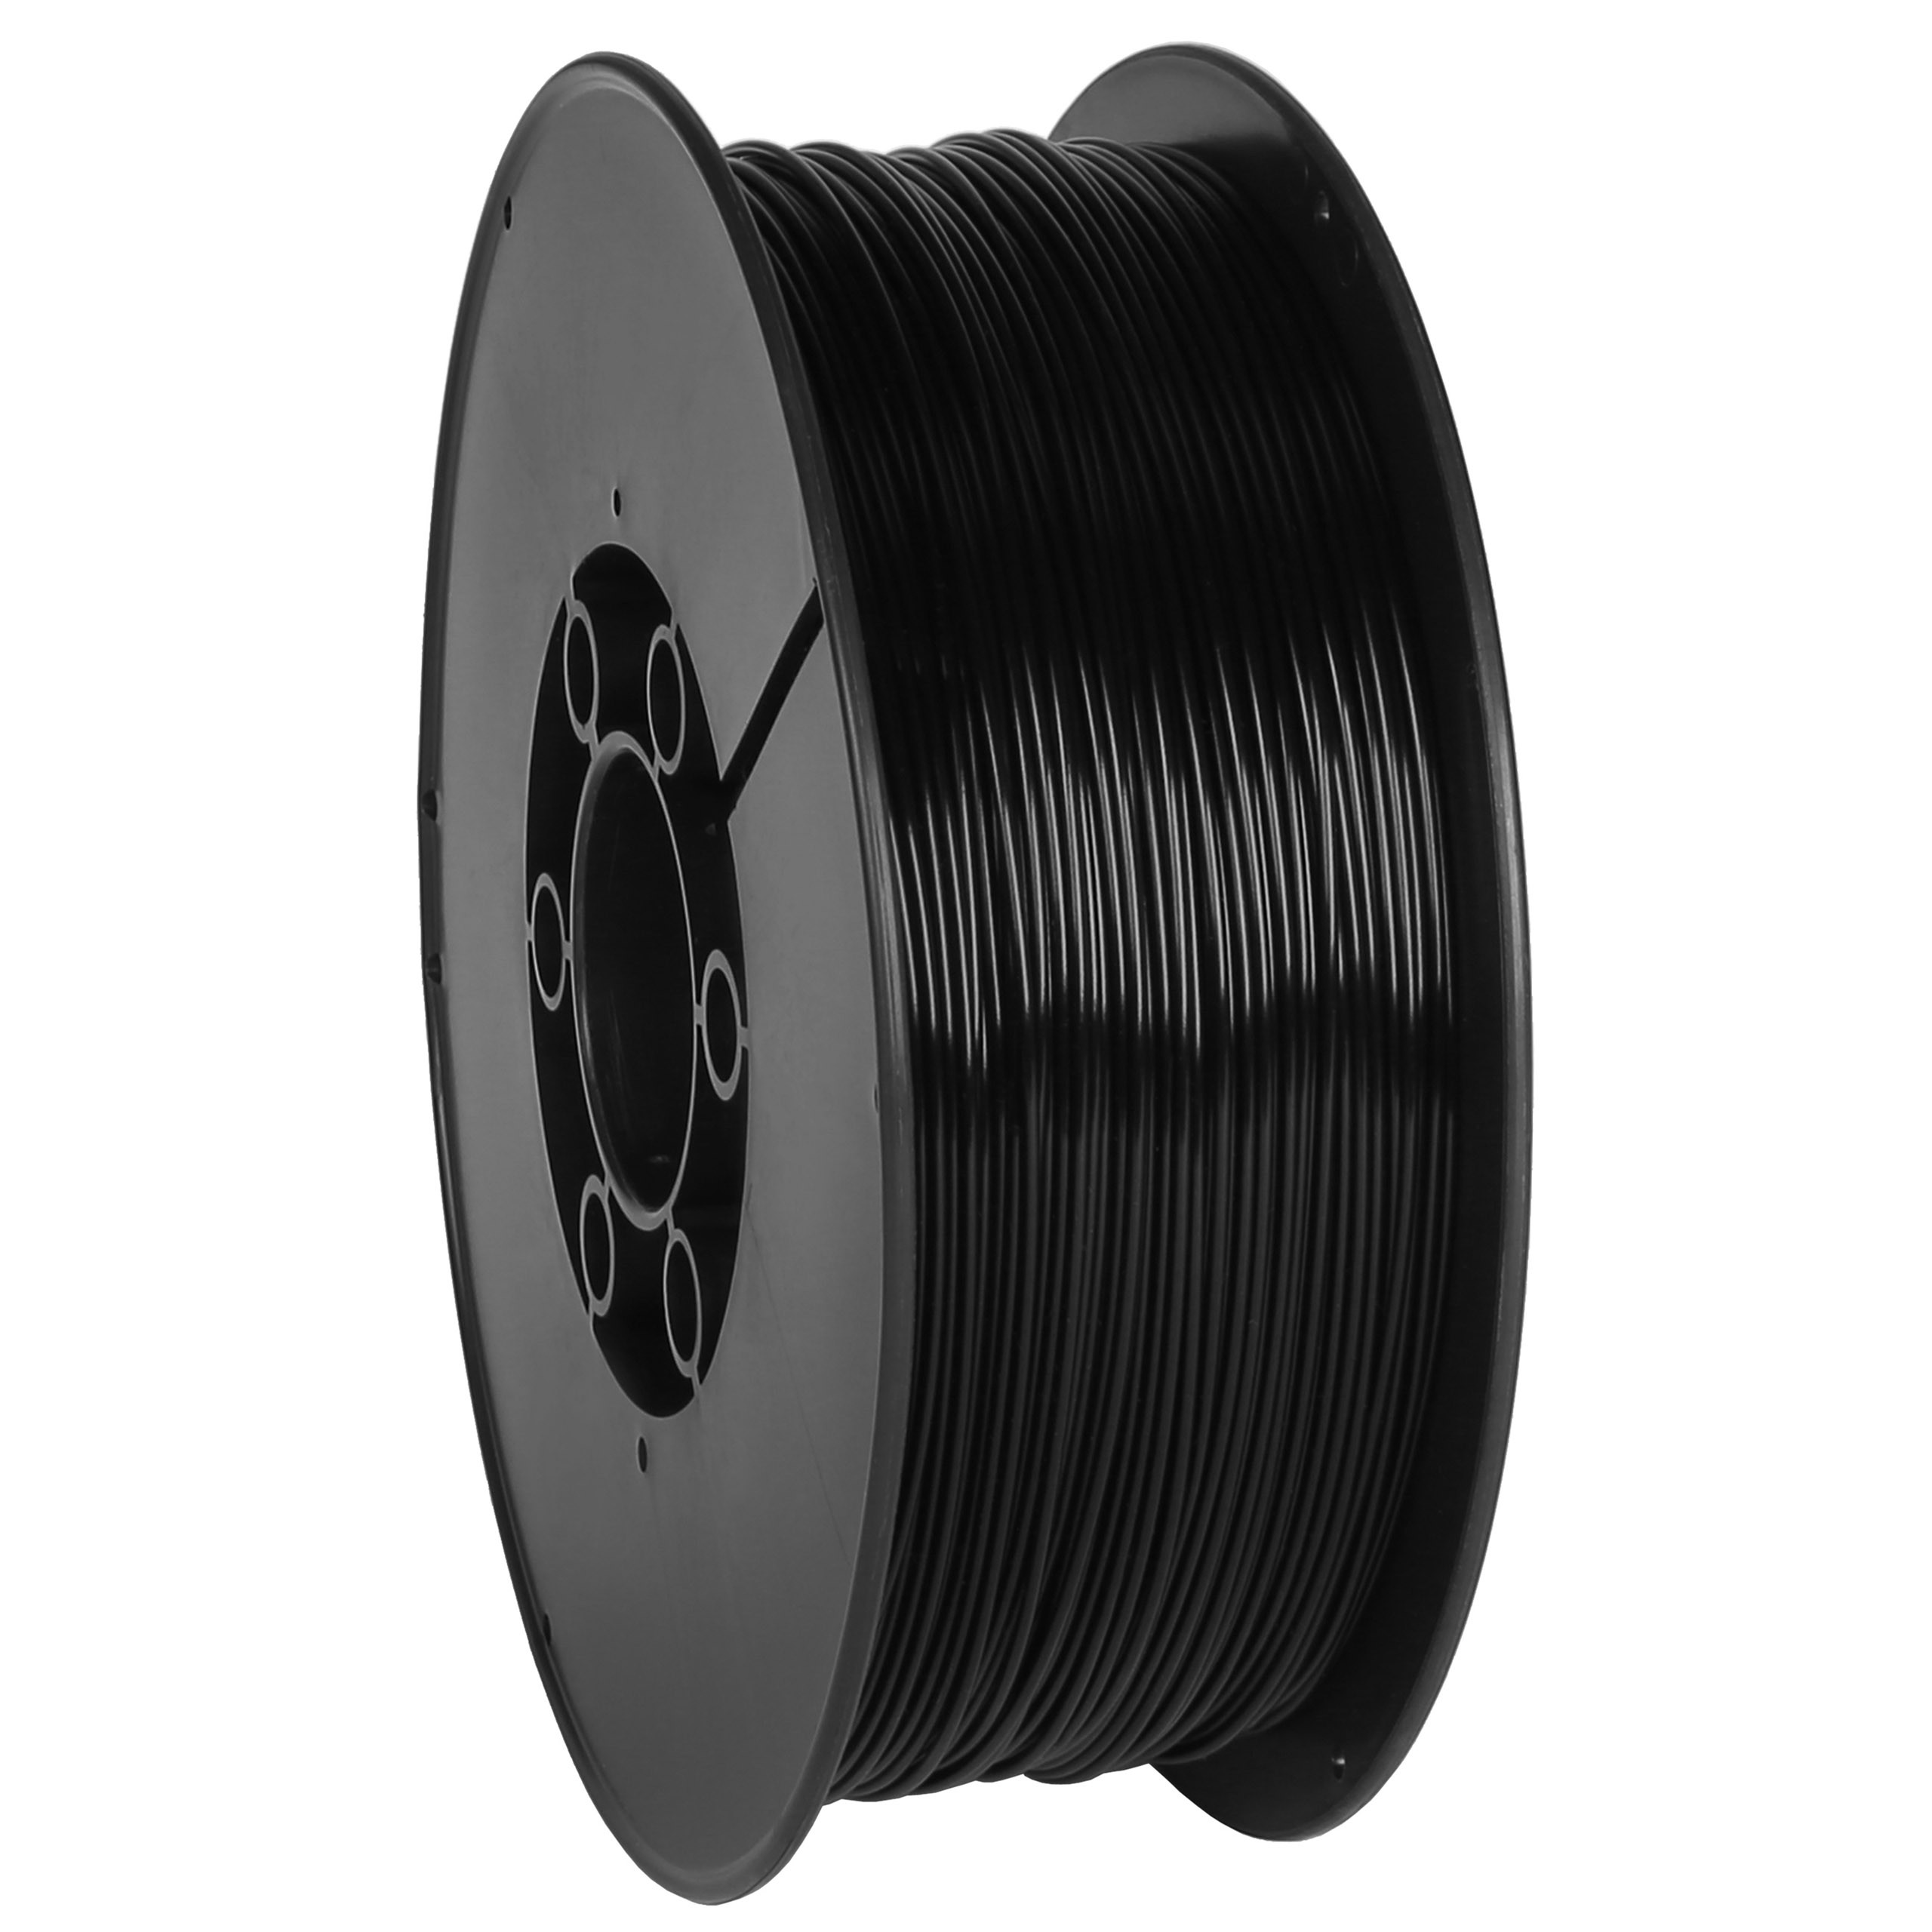 Filamento PLA nero 1,75 mm (filo) per stampanti 3D MADE IN EU - Sarcia